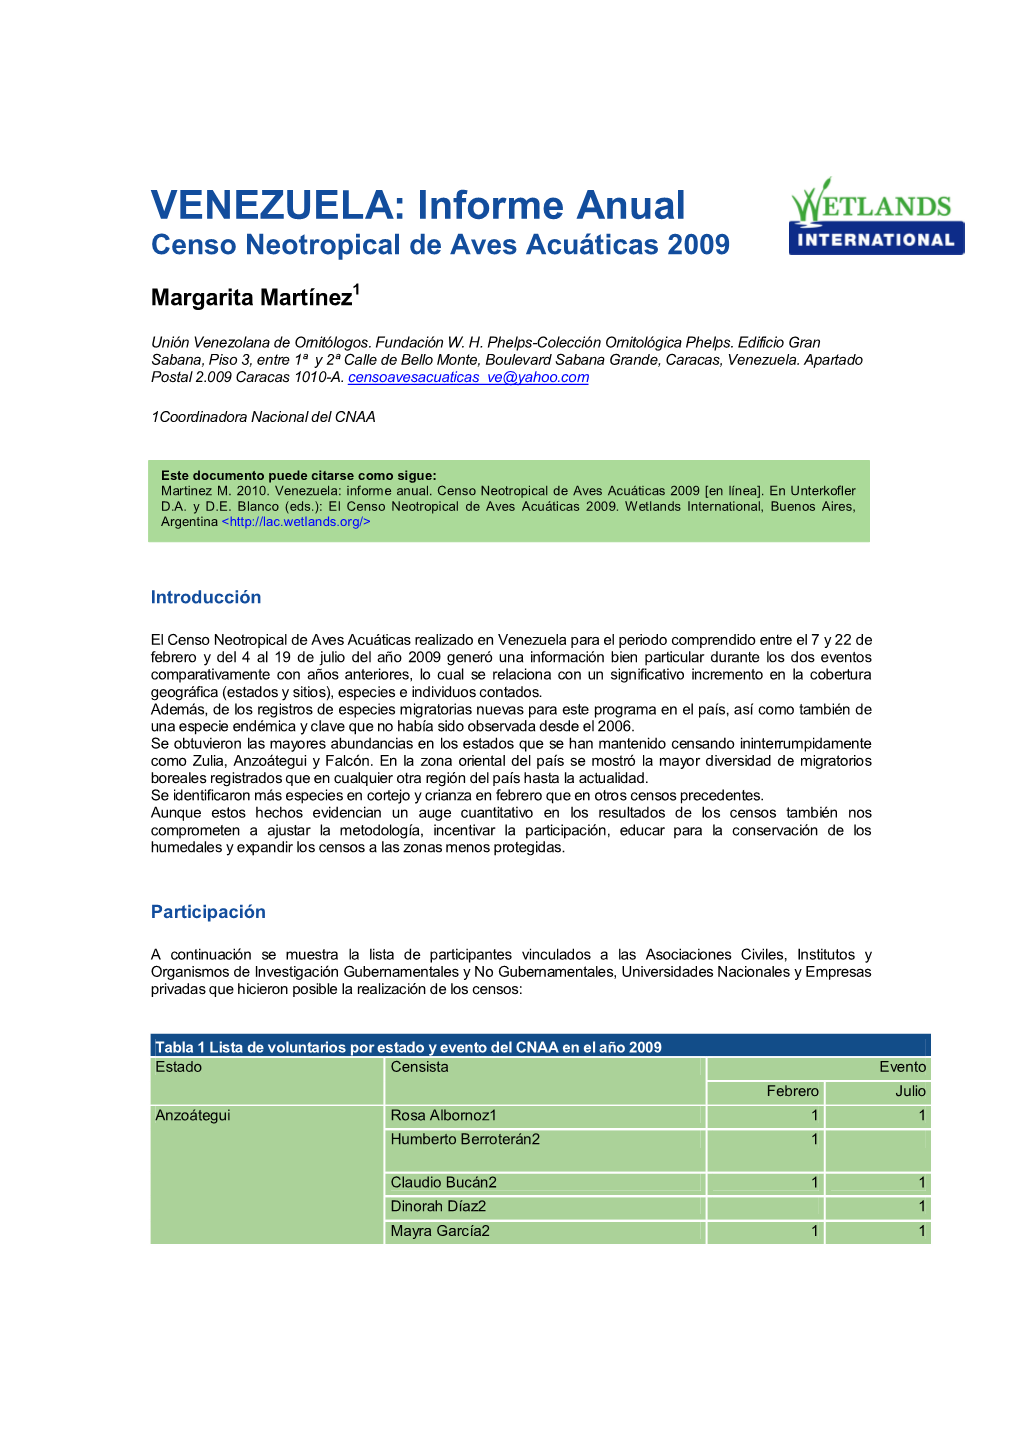 VENEZUELA: Informe Anual Censo Neotropical De Aves Acuáticas 2009